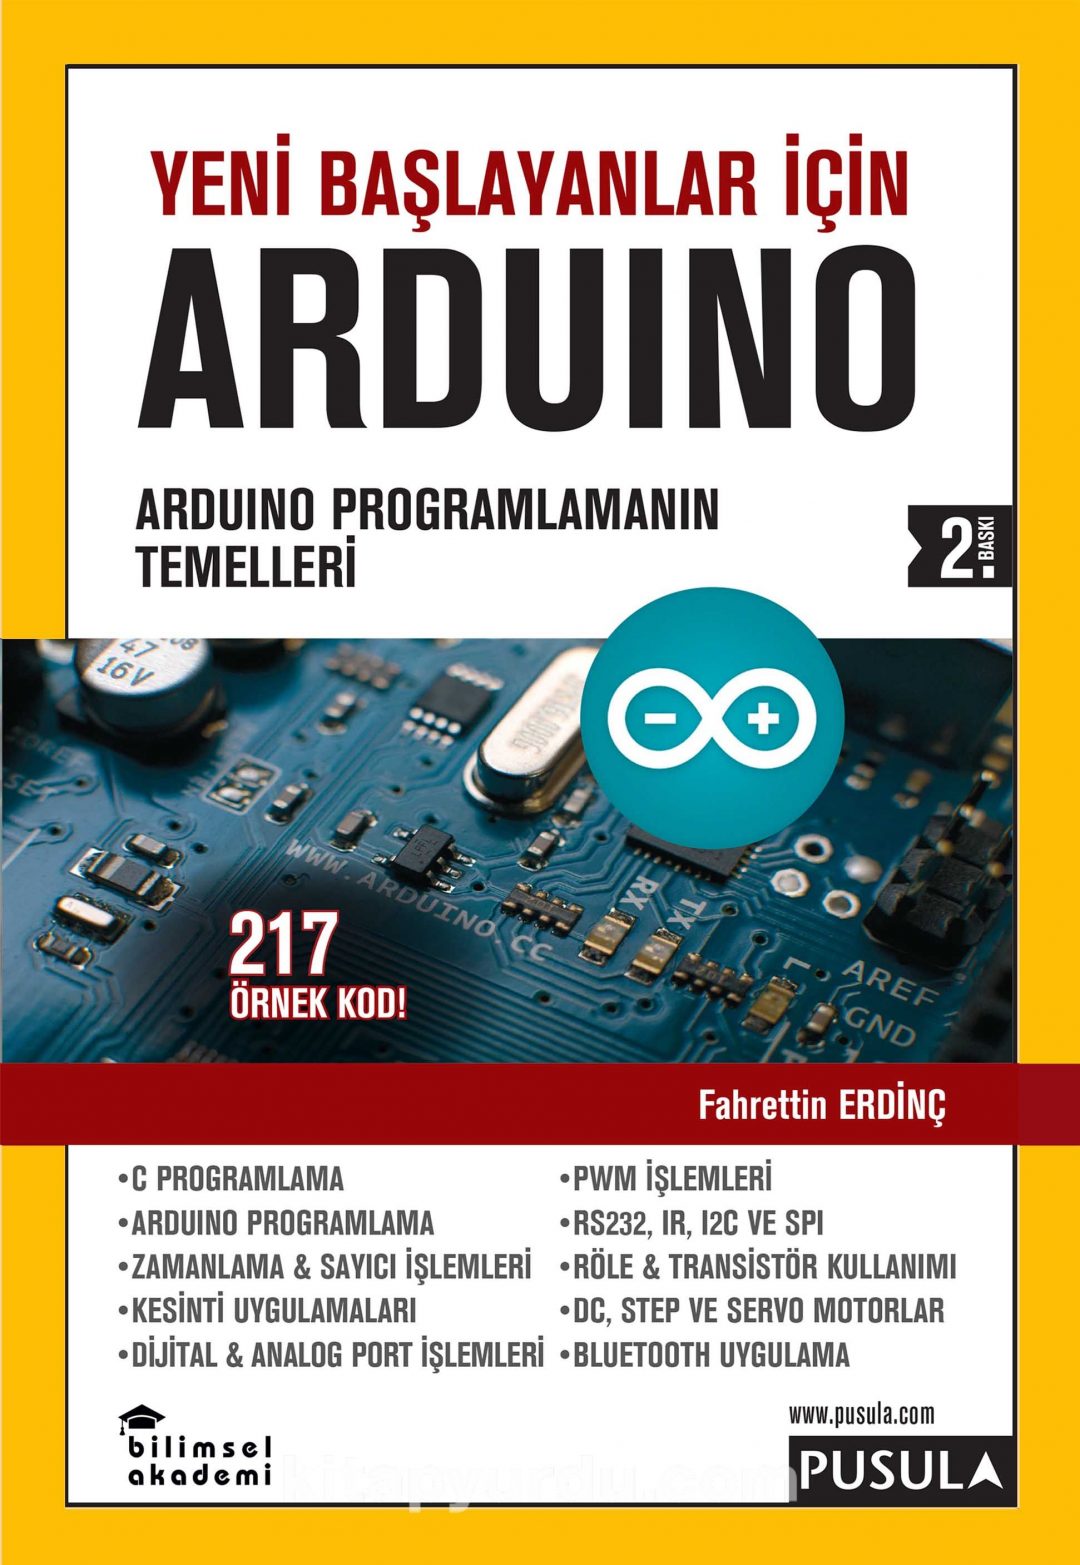 Yeni Başlayanlar İçin Arduino